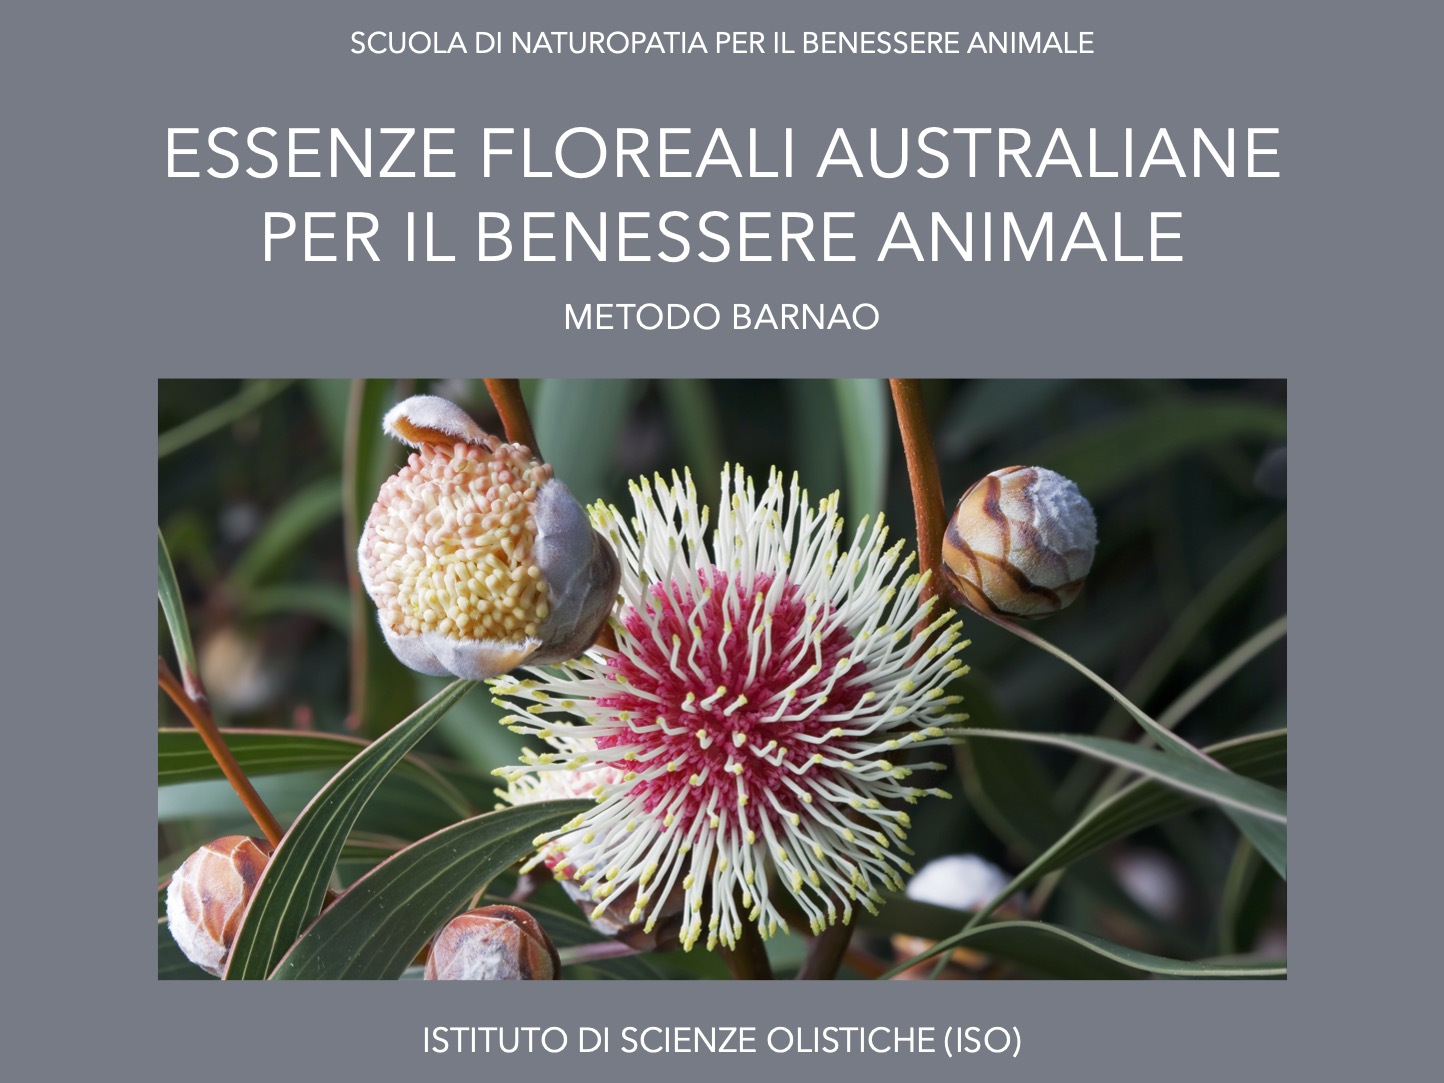 Essenze floreali australiane per il benessere animale